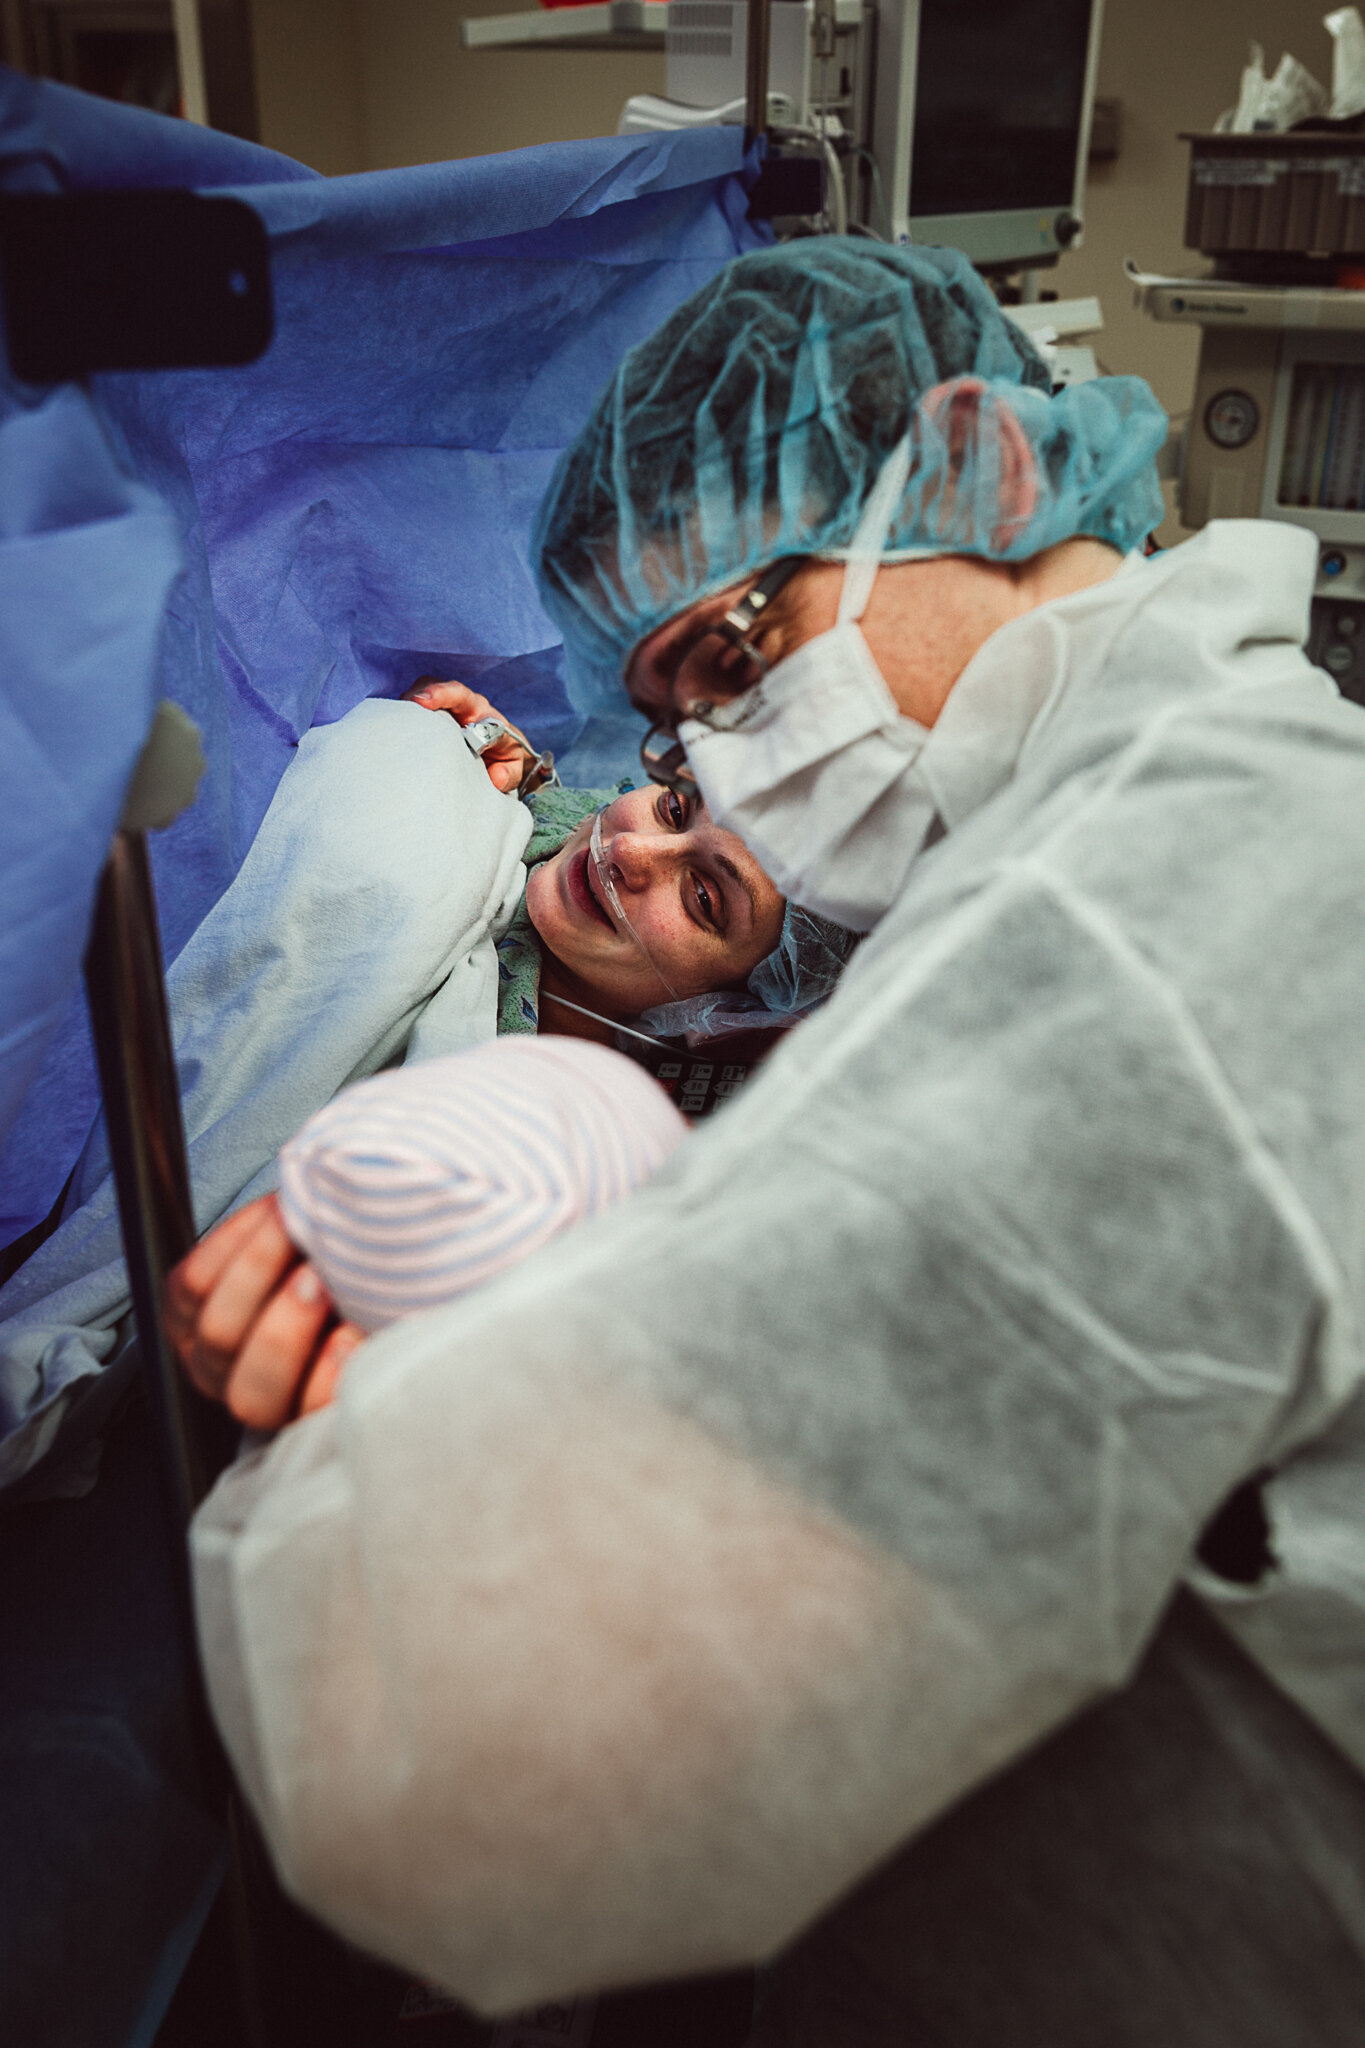 cesarean-birth-postpartum-maggie-williams-3912.jpg